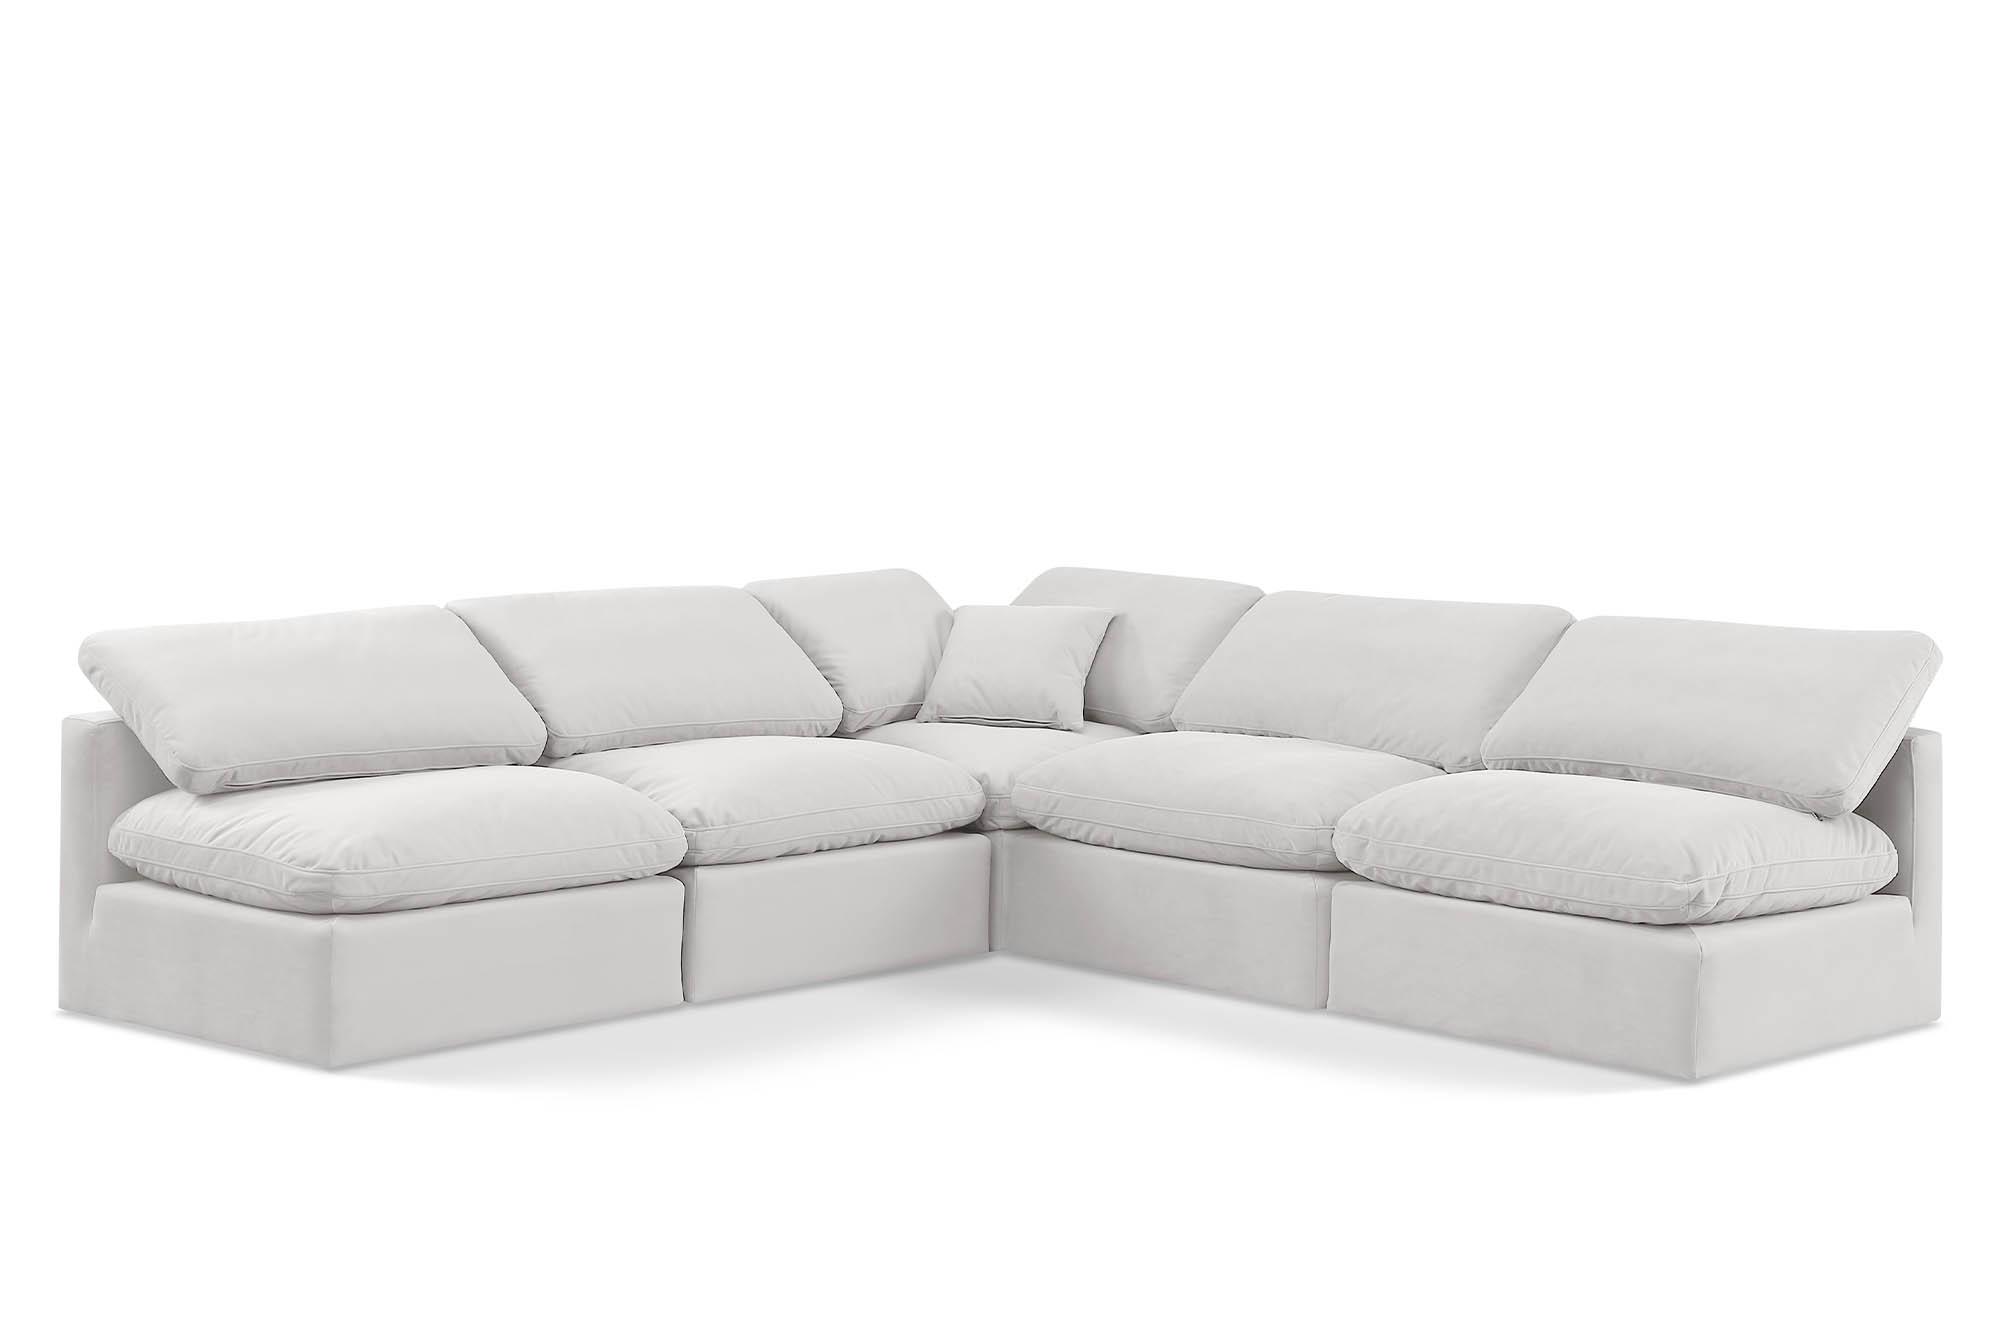 Contemporary, Modern Modular Sectional Sofa INDULGE 147Cream-Sec5B 147Cream-Sec5B in Cream Velvet